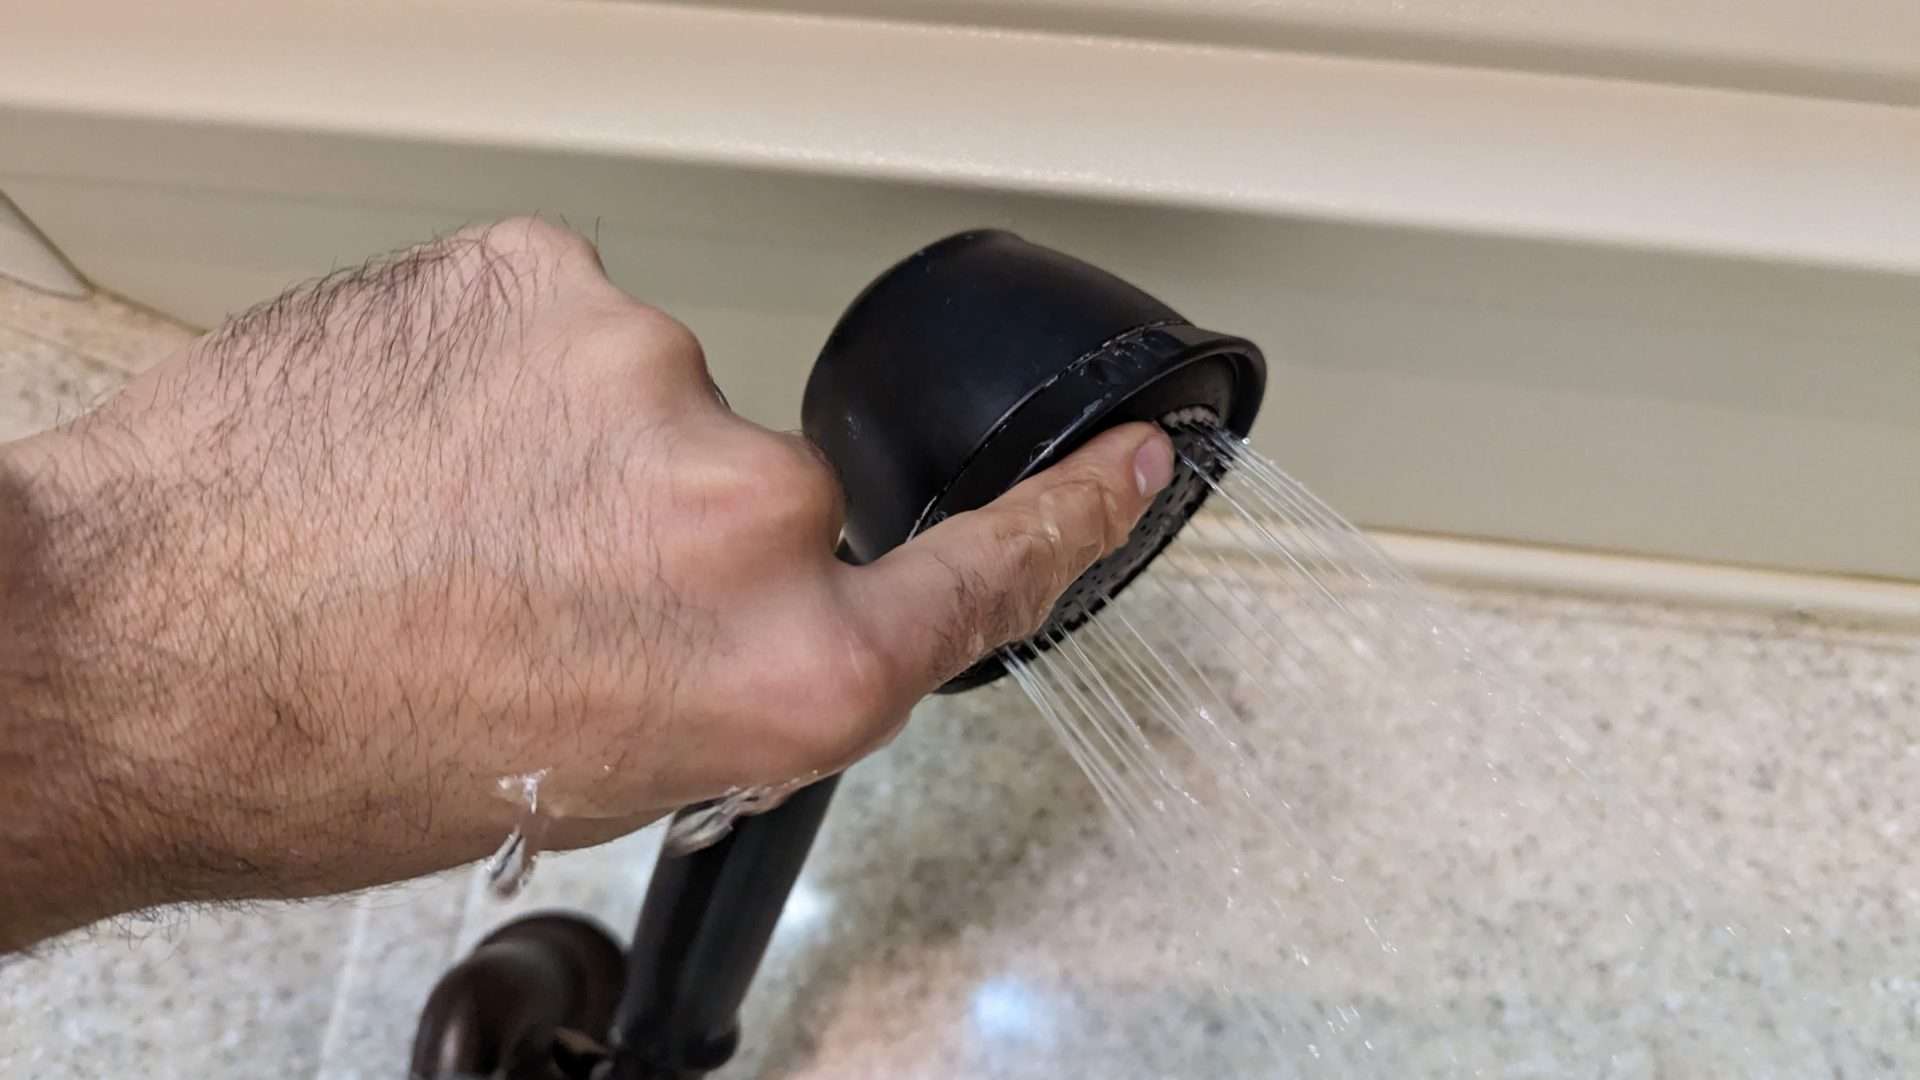 massaging a shower head 